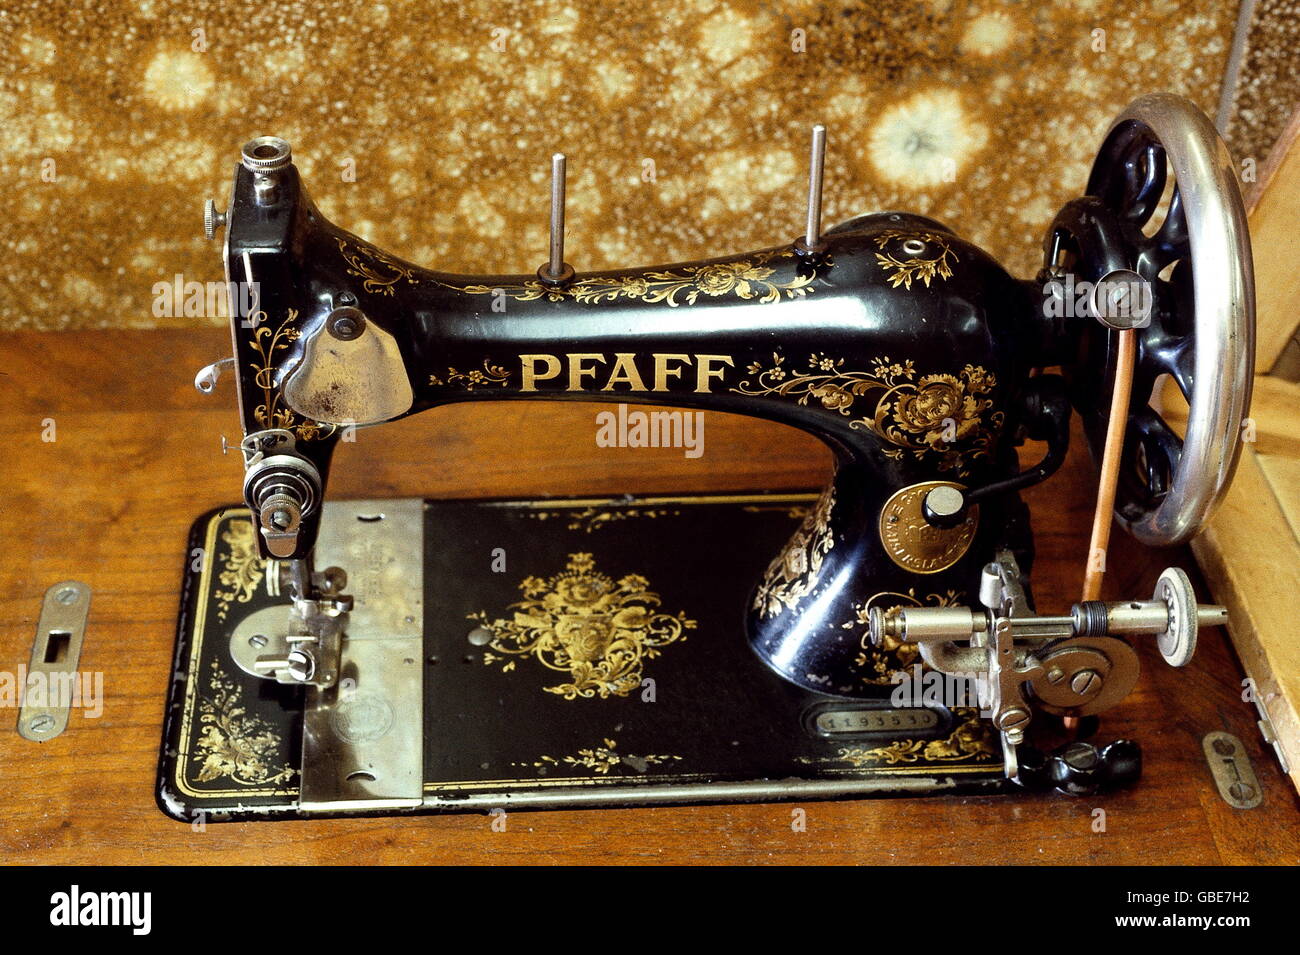 Ménage, couture, machine à coudre Pfaff, avec ornements dorés